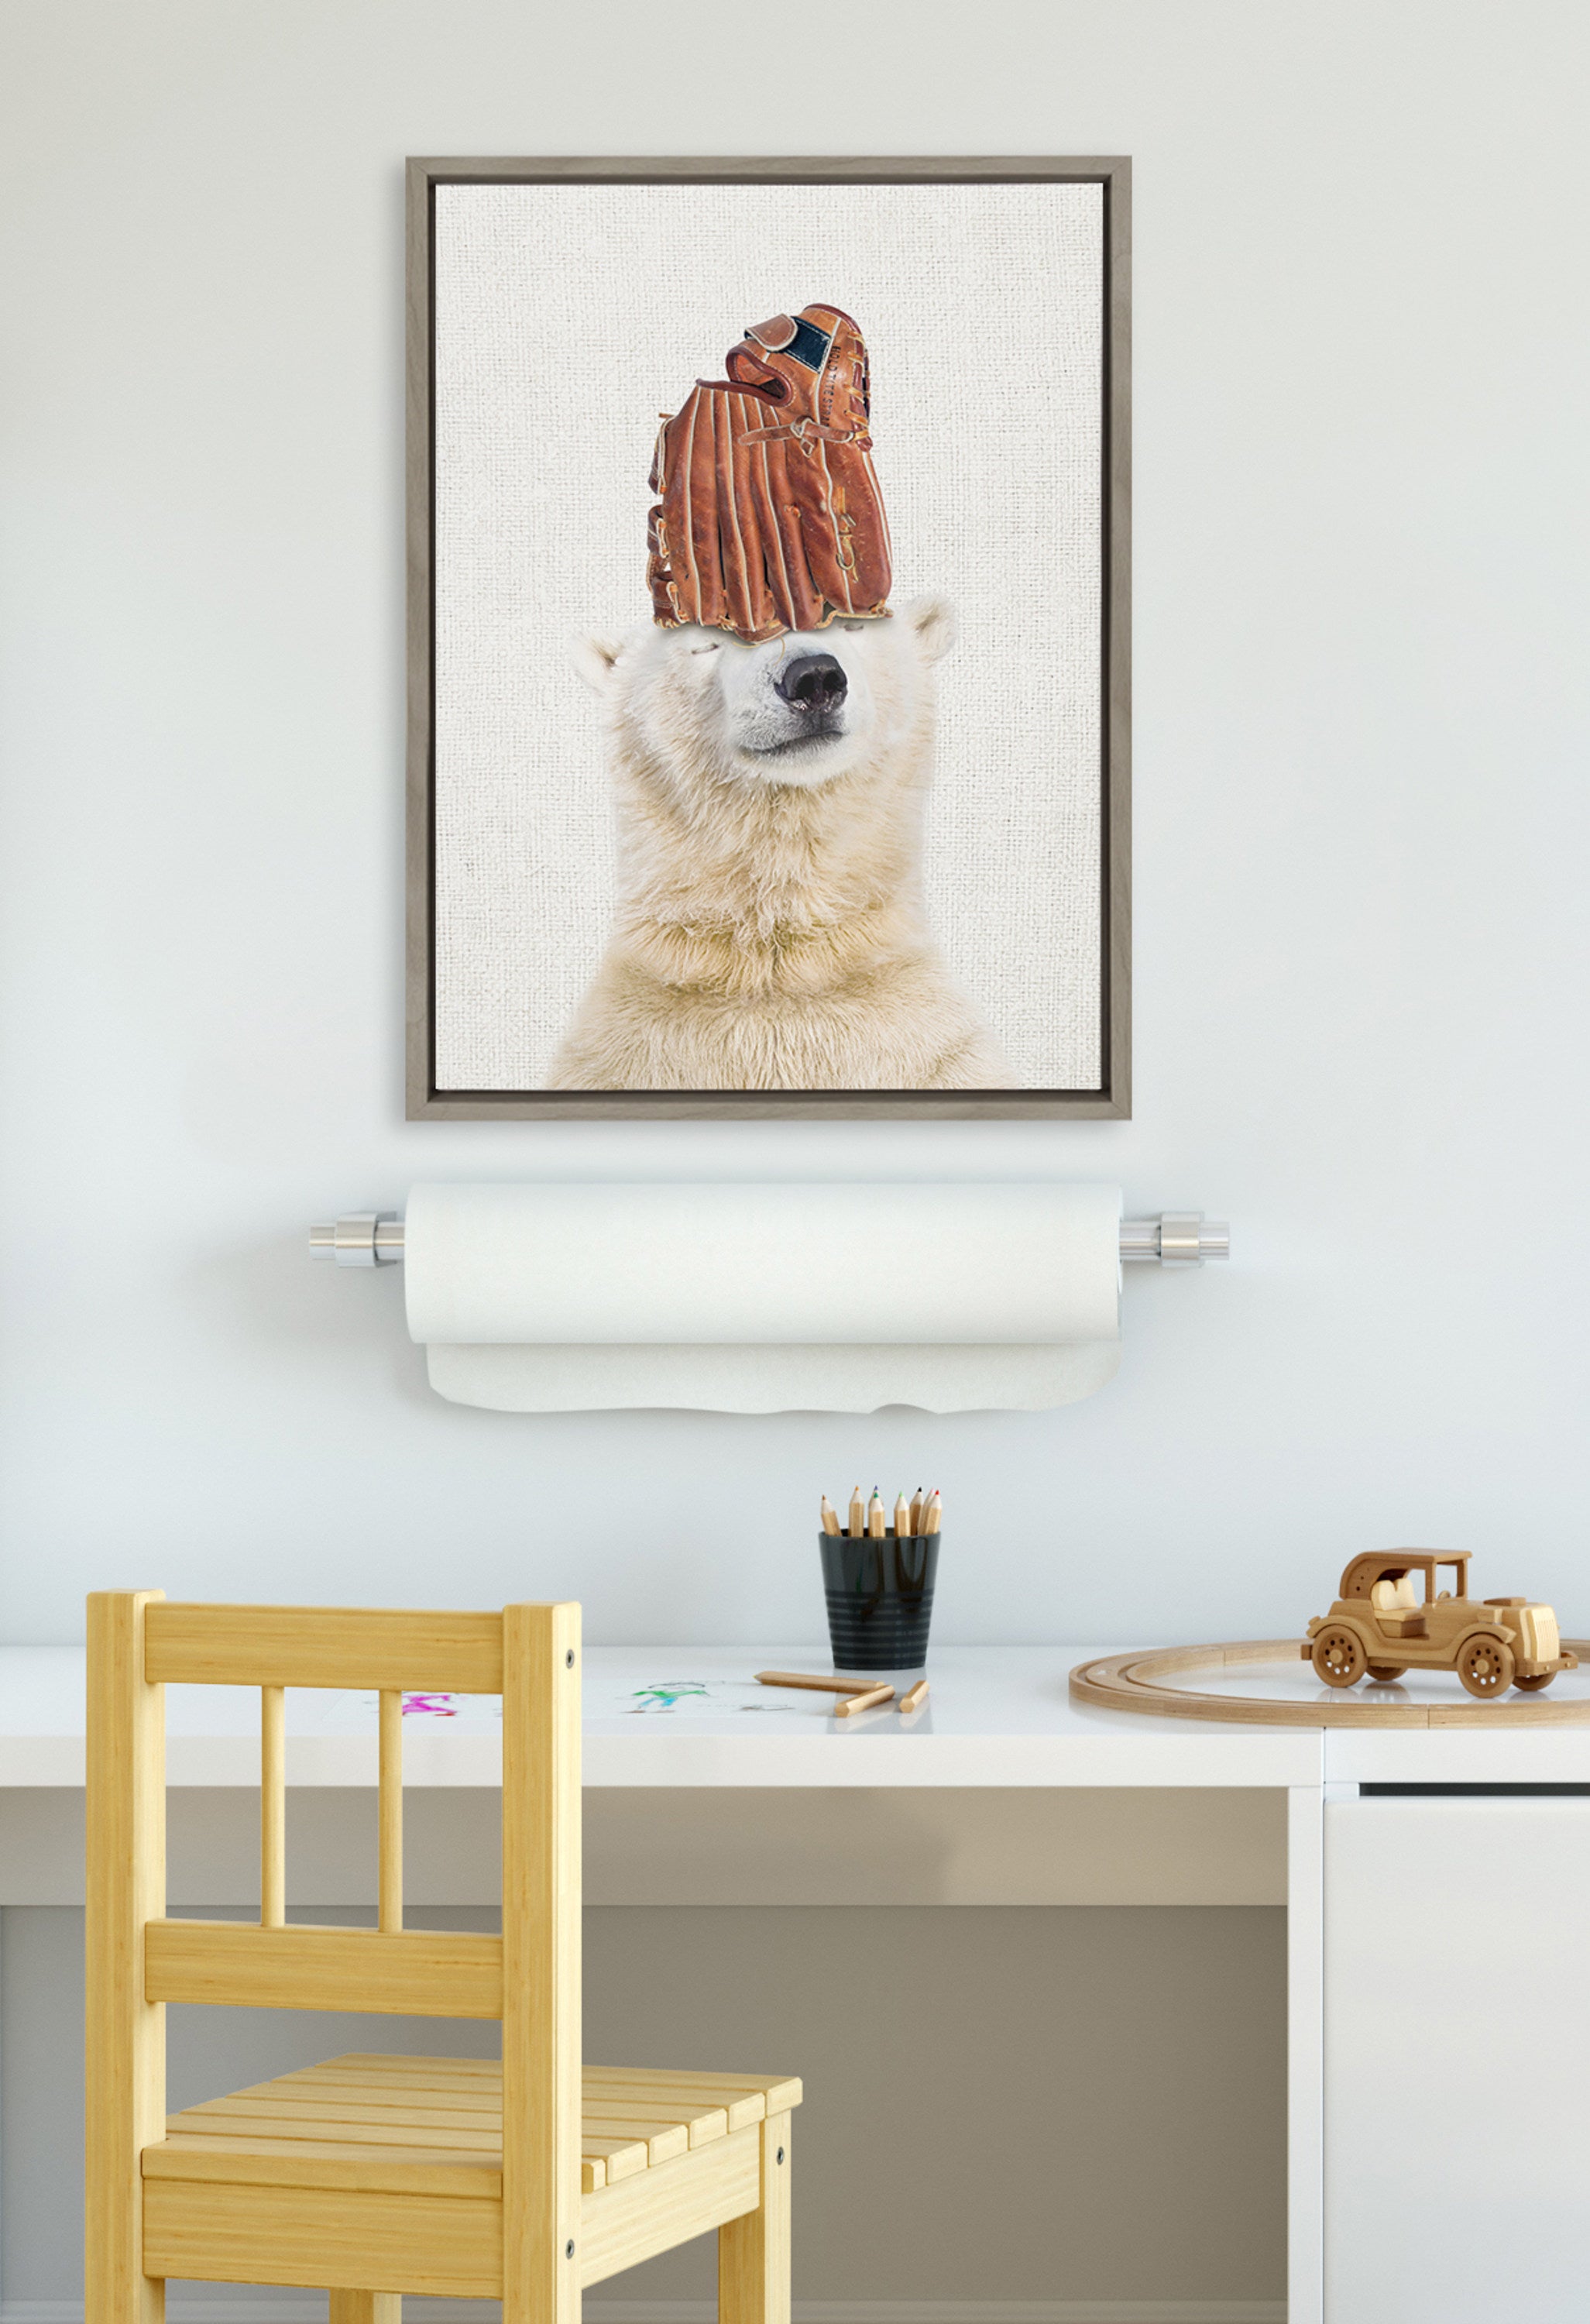 Sylvie Polar Bear Baseball Framed Canvas by Amy Peterson Art Studio